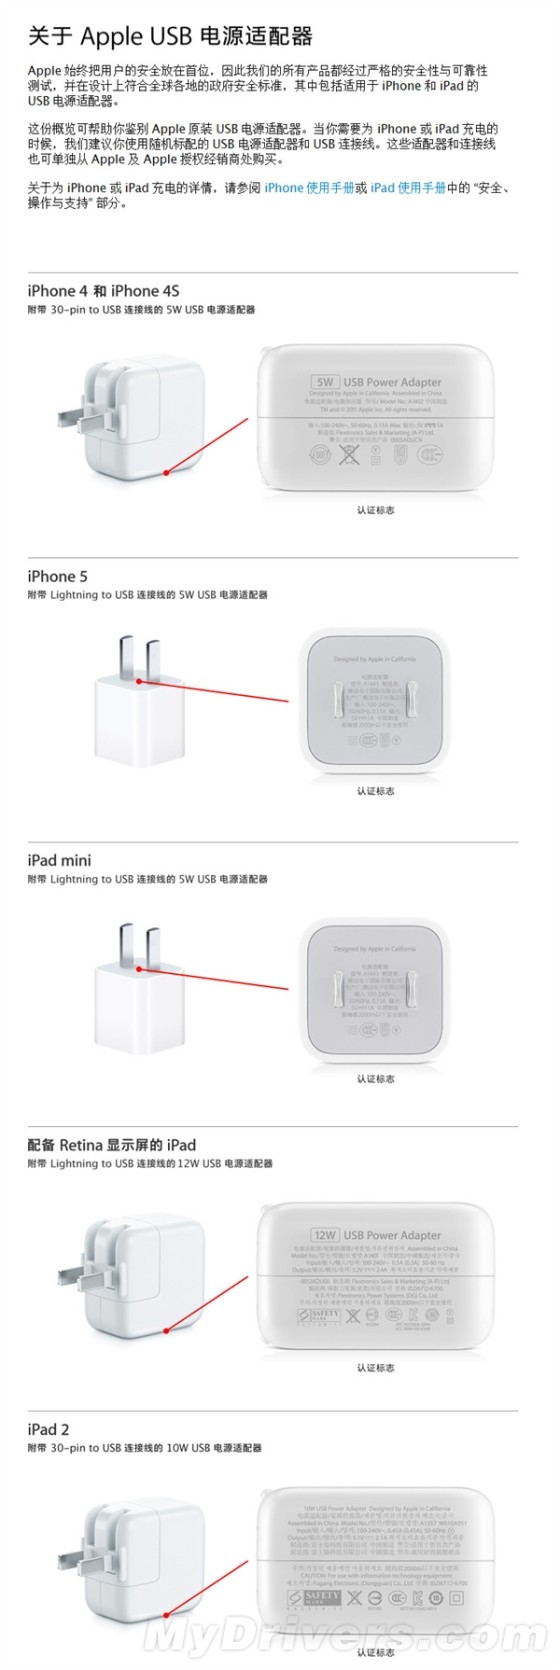 苹果发布原装充电器鉴别图文-ZOL科技频道